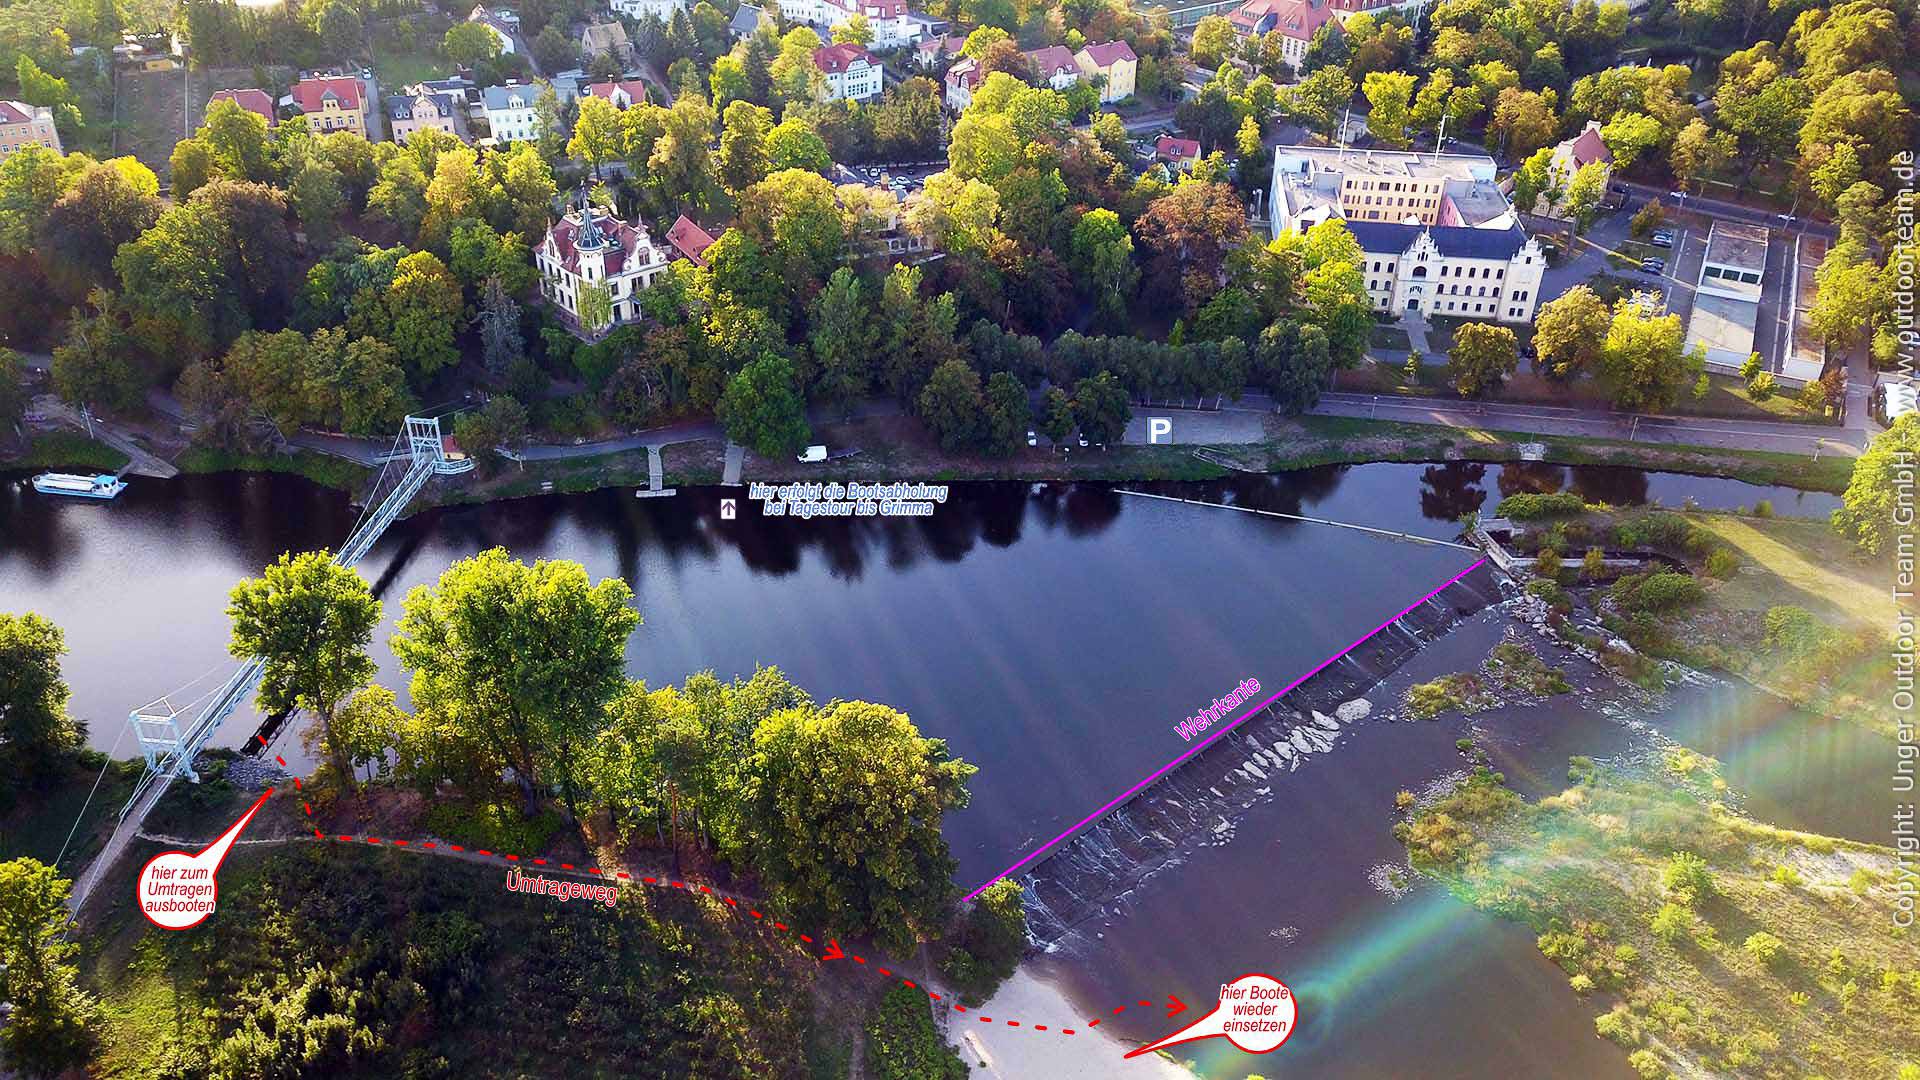 Luftbild Stadt Grimma, Bootsausstieg nahe der Hängebrücke (Bootsabgabe der "Tagespaddler" auf dem Mulde-Fluss)